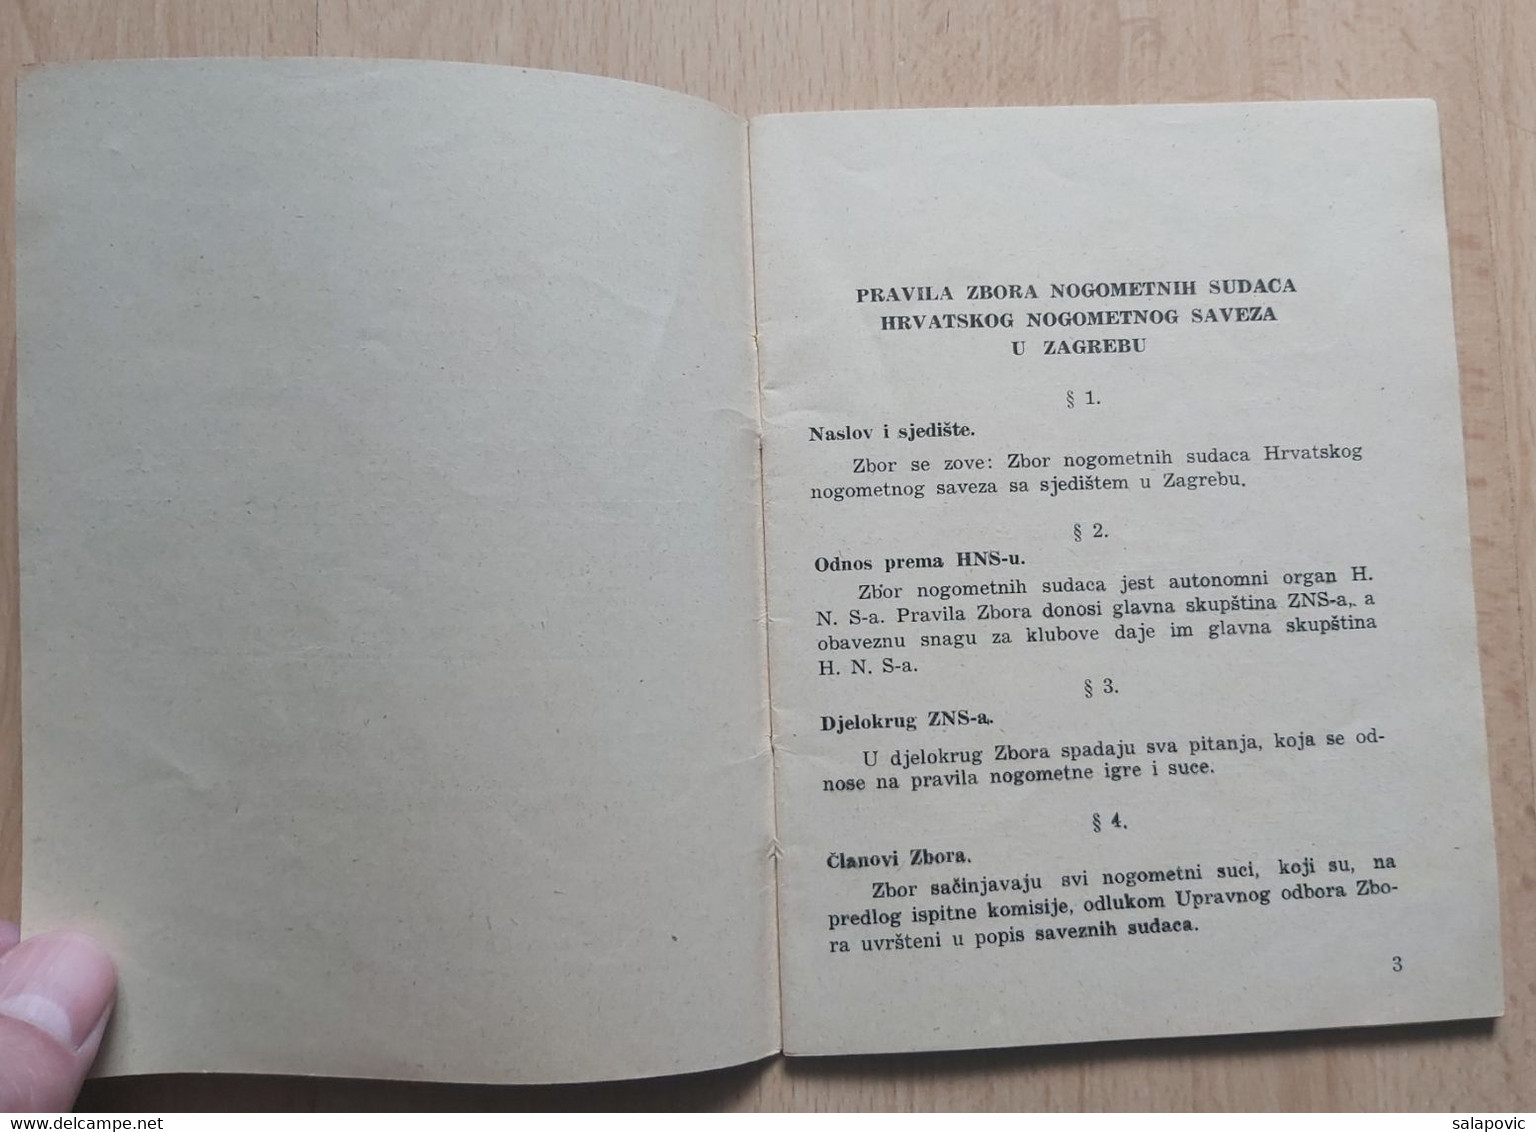 PRAVILA ZBORA NOGOMETNIH SUDACA HRVATSKOG NOGOMETNOG SAVEZA U ZAGREBU 1940  CROATIAN FOOTBALL FEDERATION - Books